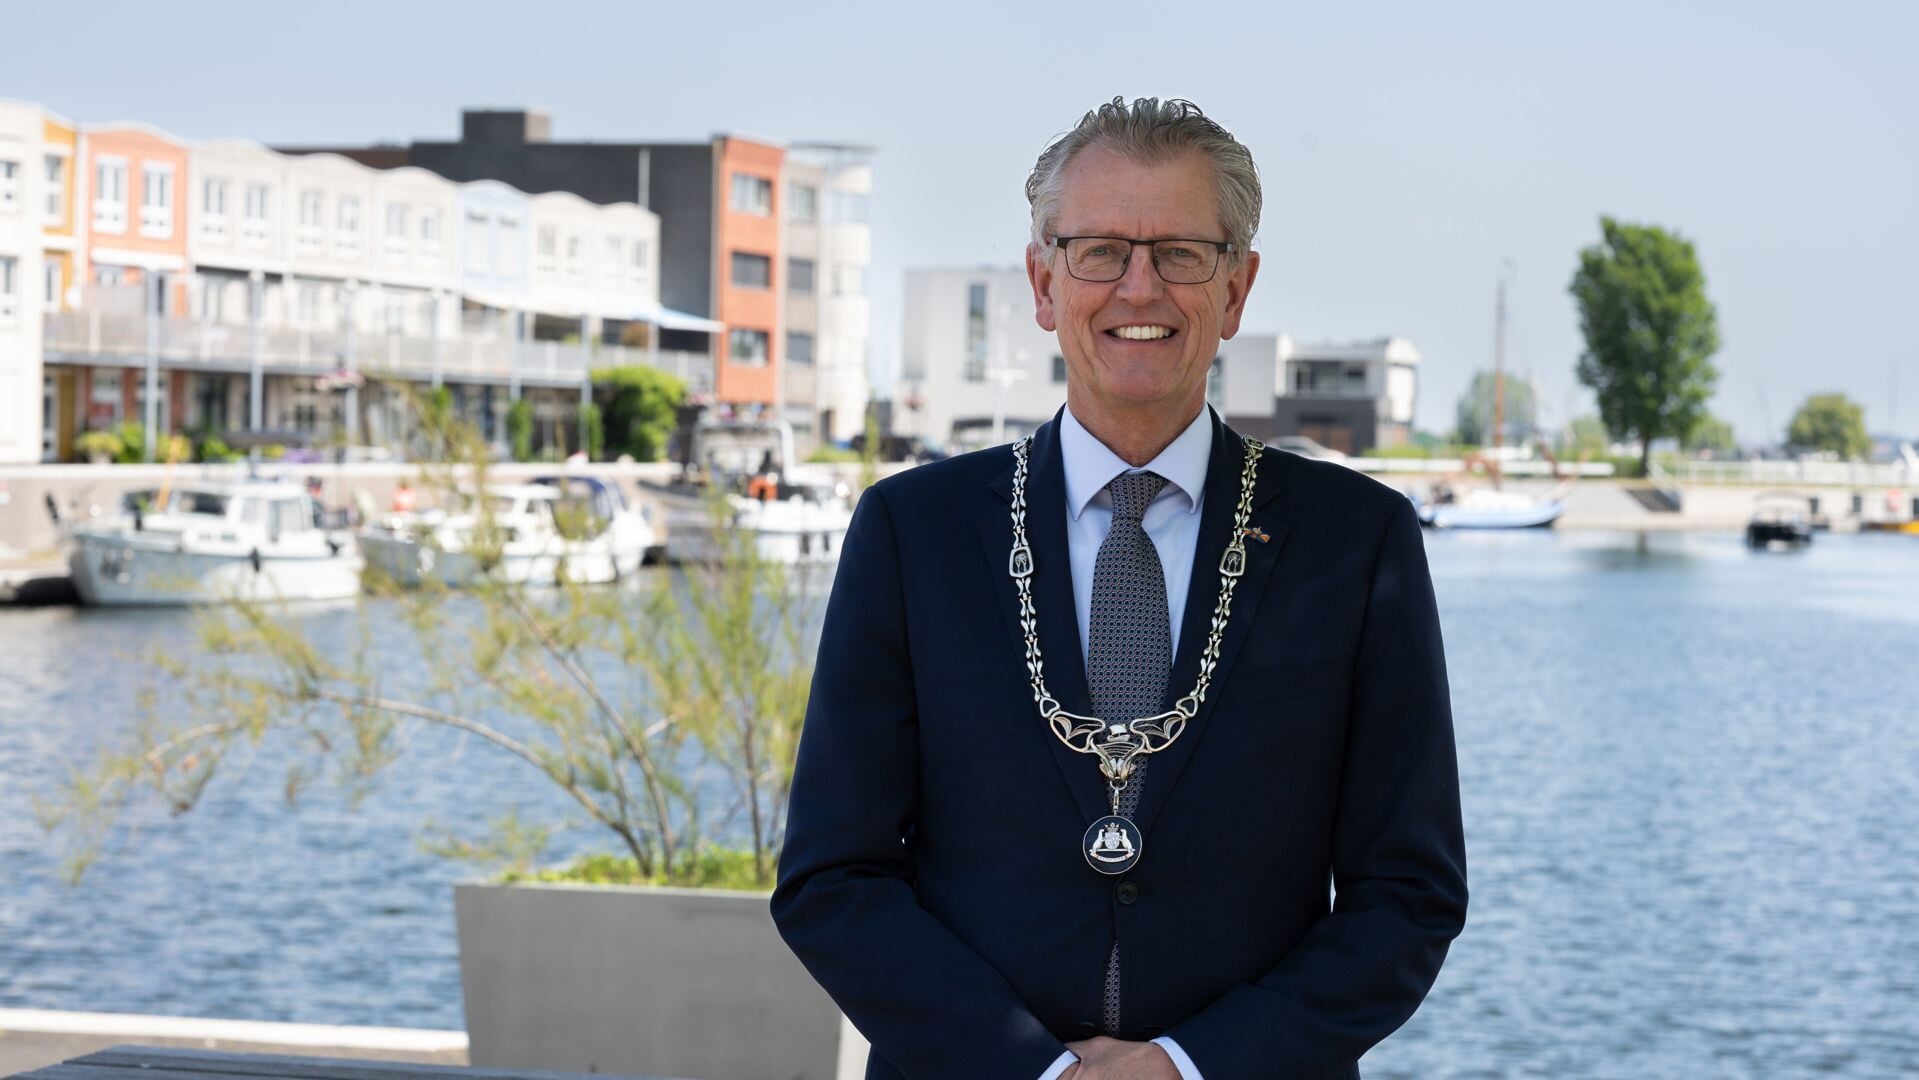 Gerrit Jan Gorter, burgemeester van Zeewolde. (Foto: Van de Vliert Photography)